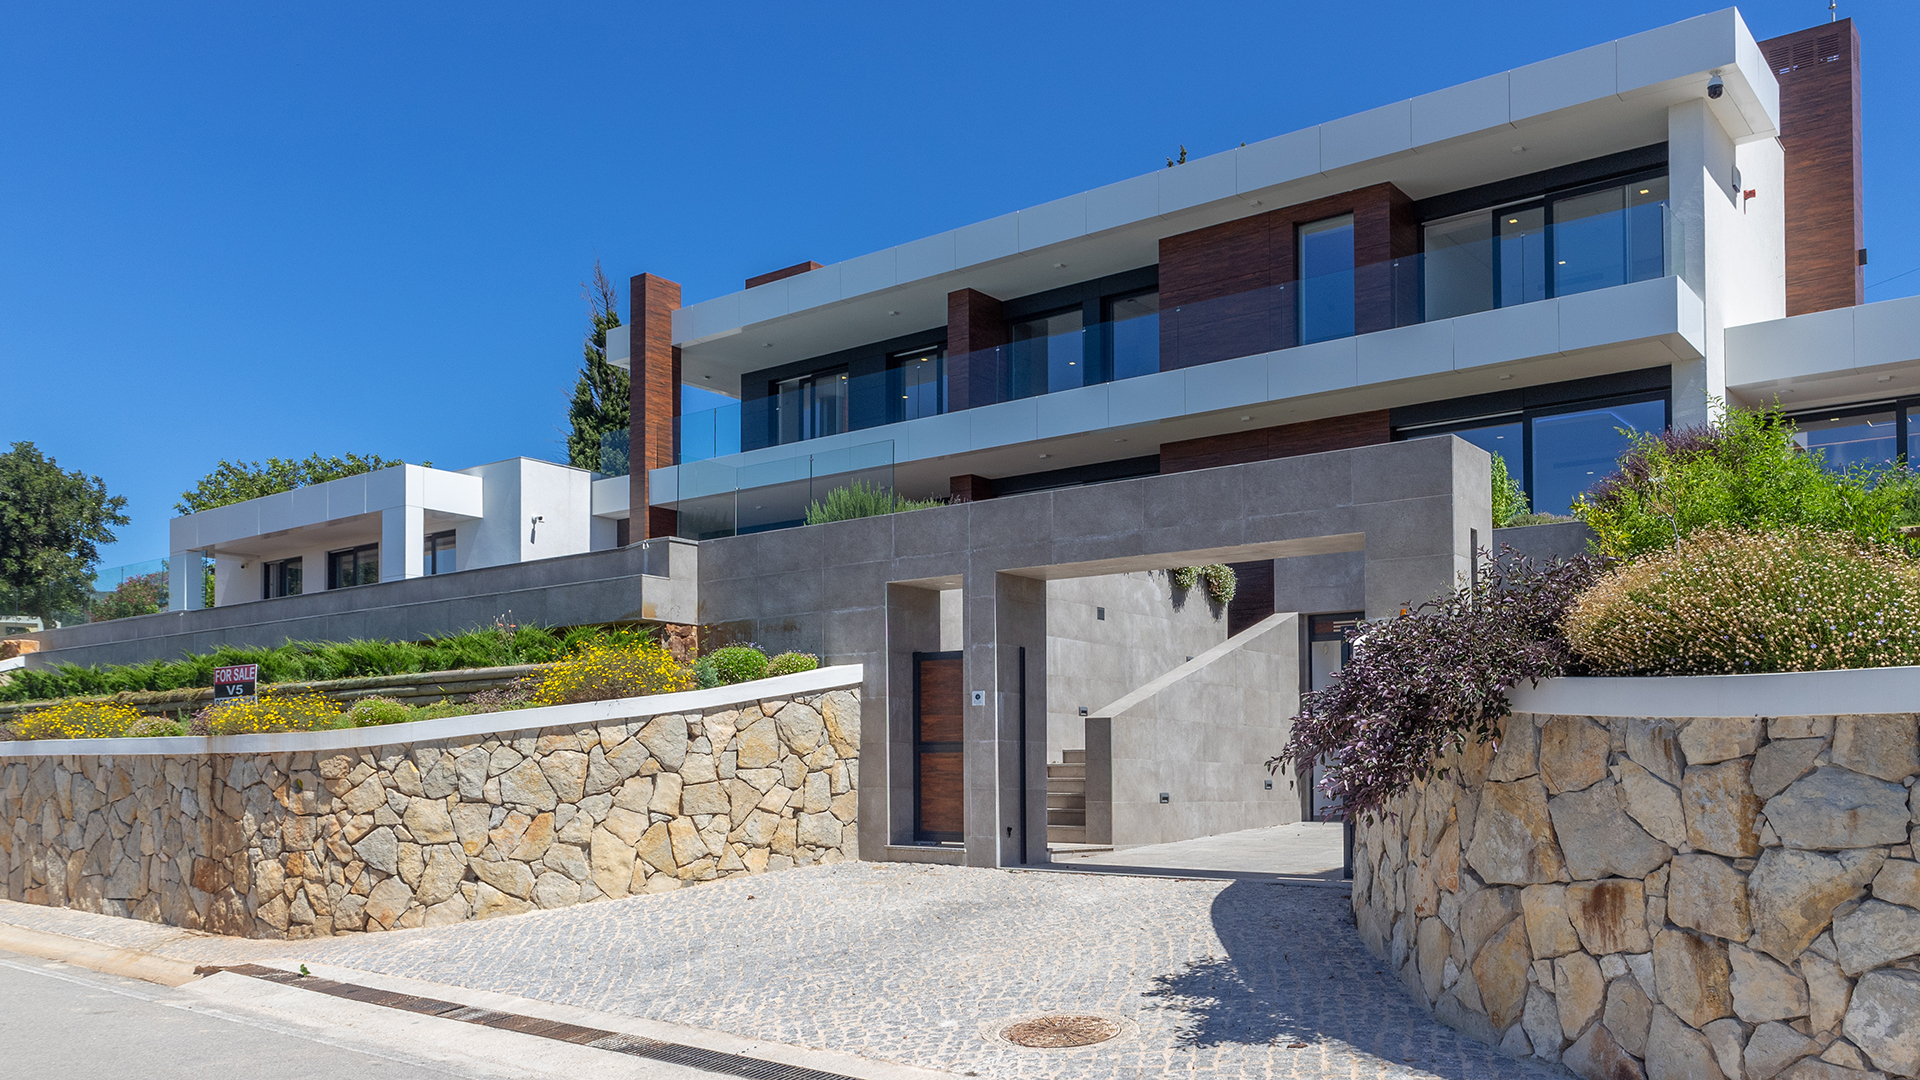 Maison de rêve de luxe avec piscine et vue spectaculaire, Caldas de Monchique | LG1938 Fantastique maison contemporaine neuve construite dans un esprit de vie facile et de loisirs. Utilisant des matériaux et une technologie innovants, il s'agit d'un bâtiment économe en énergie, plein d'espace, de lumière et de lignes épurées. Un endroit pour profiter de la tranquillité loin de la côte animée mais jamais trop loin de tout ce que l'Algarve a à offrir.